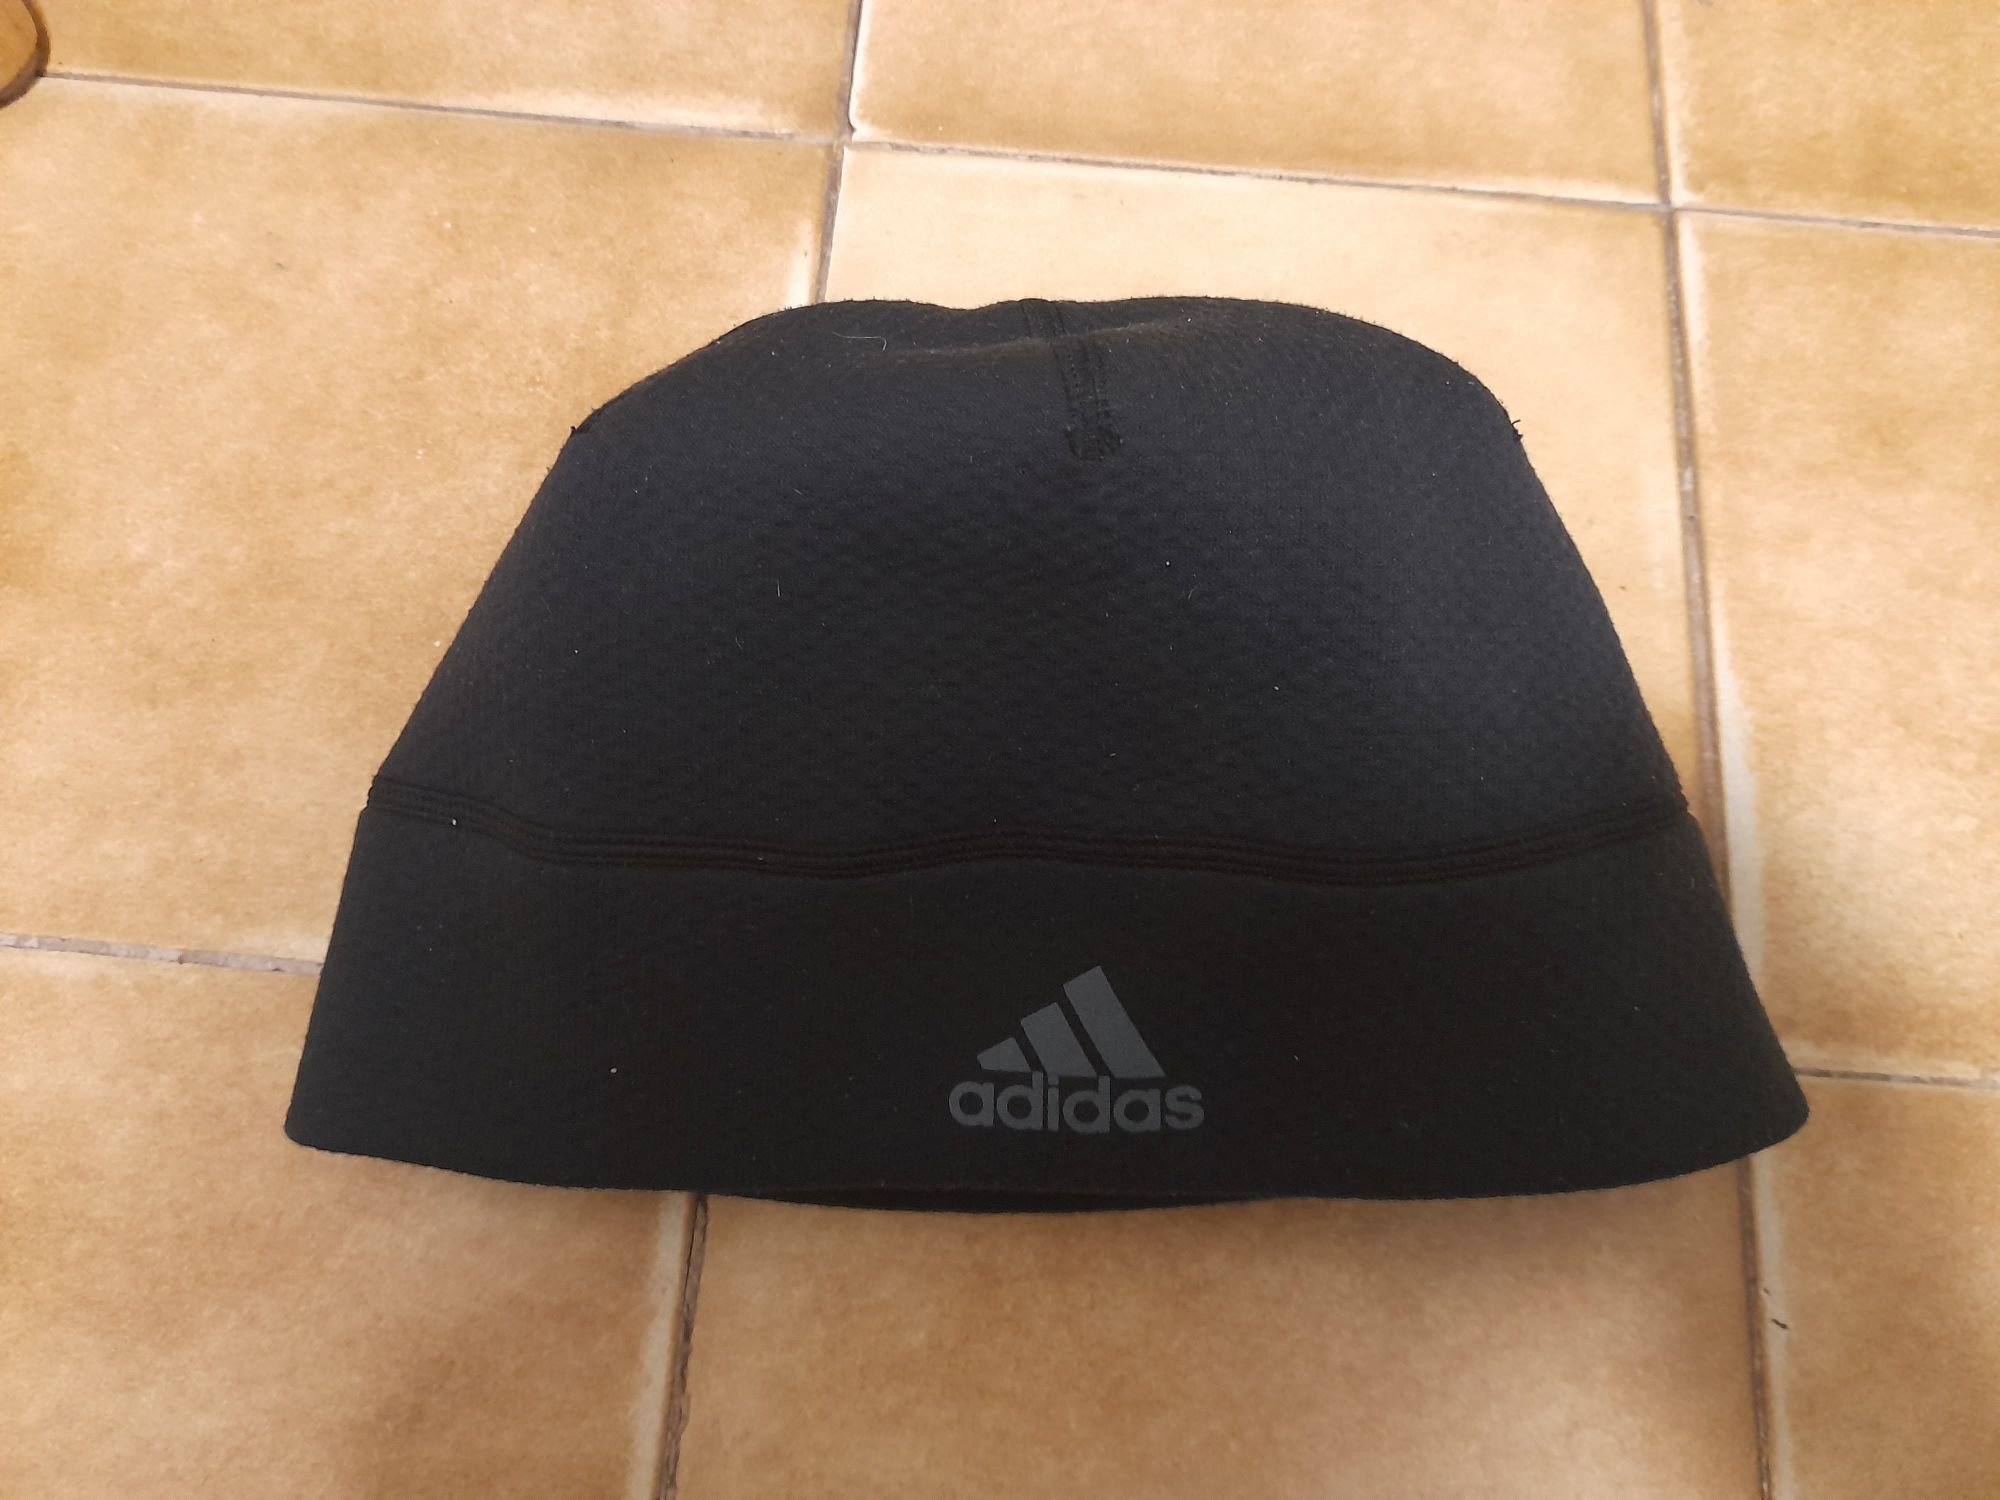 Adidas czapka zimowa unisex one size